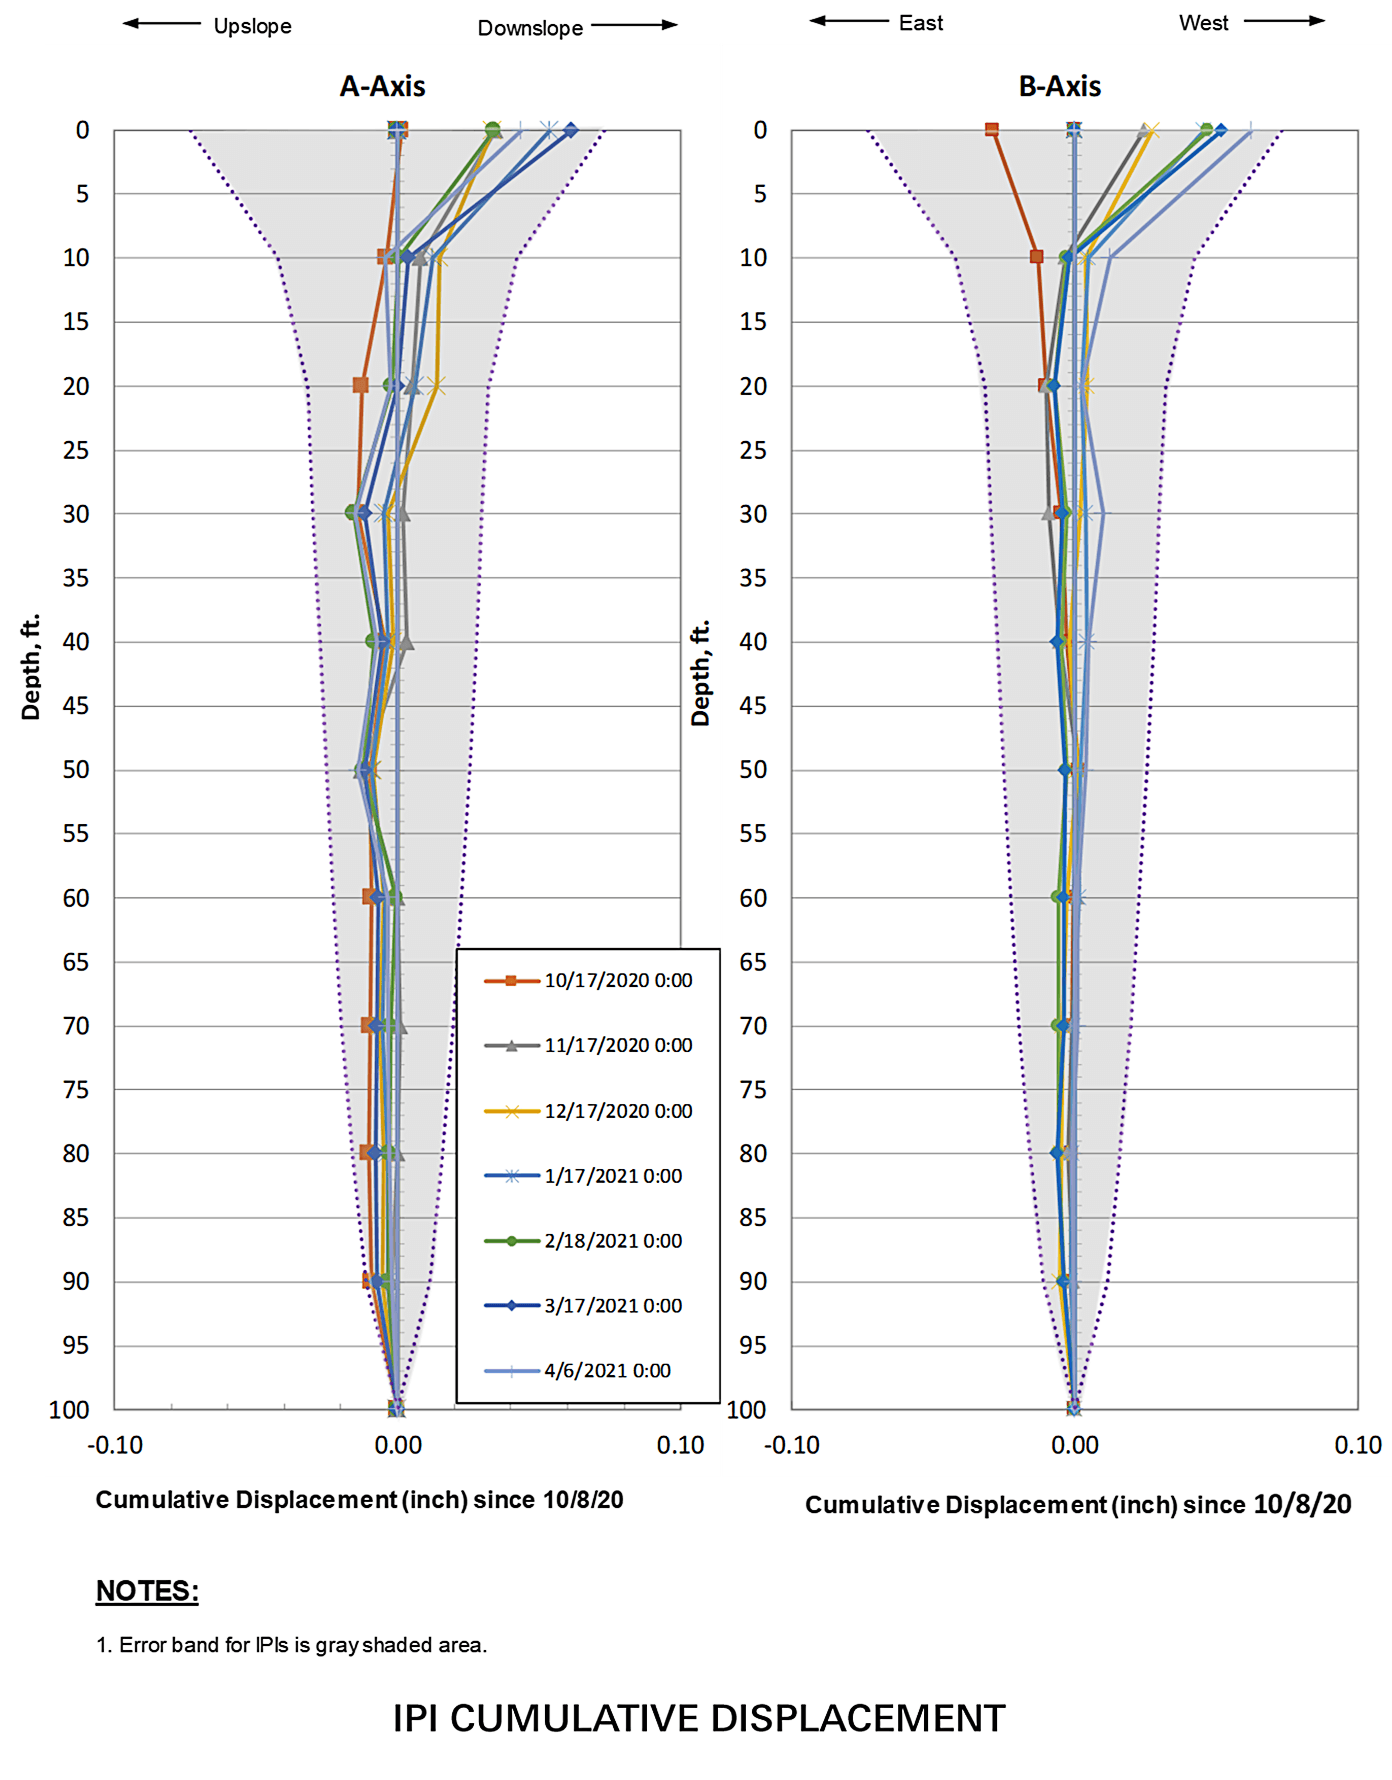 Image of plot showing the cumulative error band alongside some sample IPI data